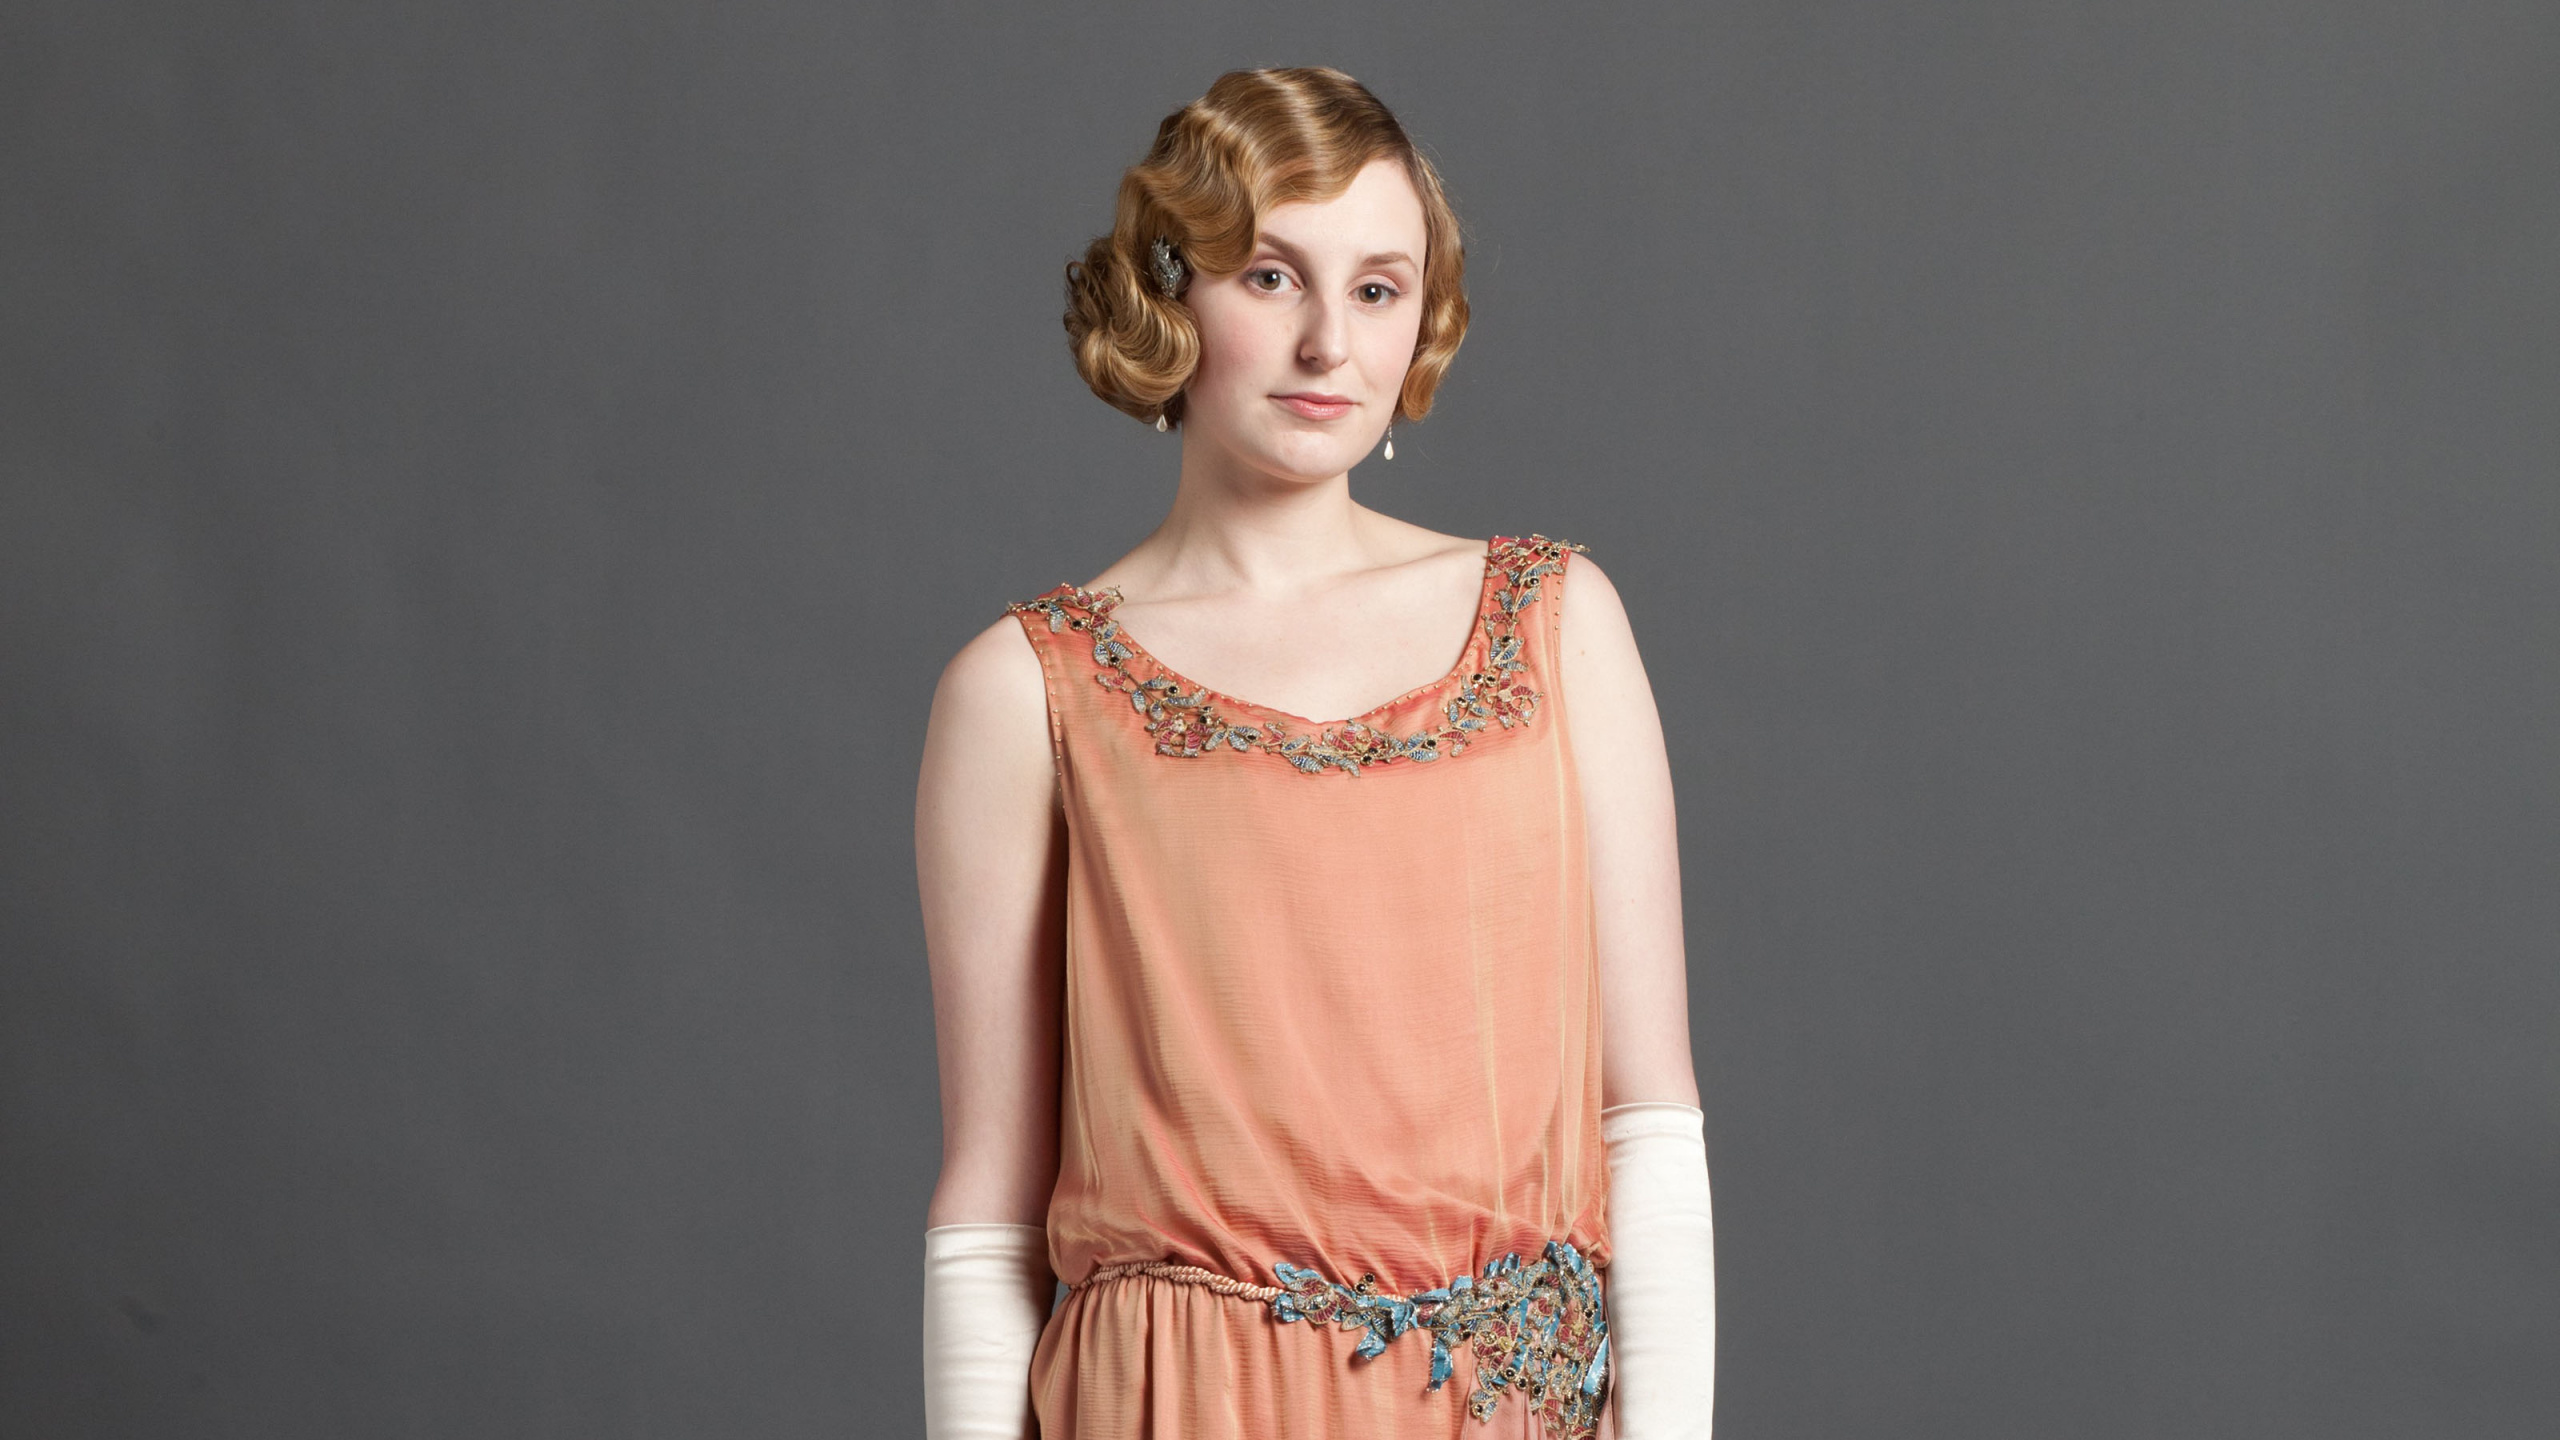 Laura Carmichael, Lady Edith Crawley, Downton Abbey, Dress, Clothing. Wallpaper in 2560x1440 Resolution